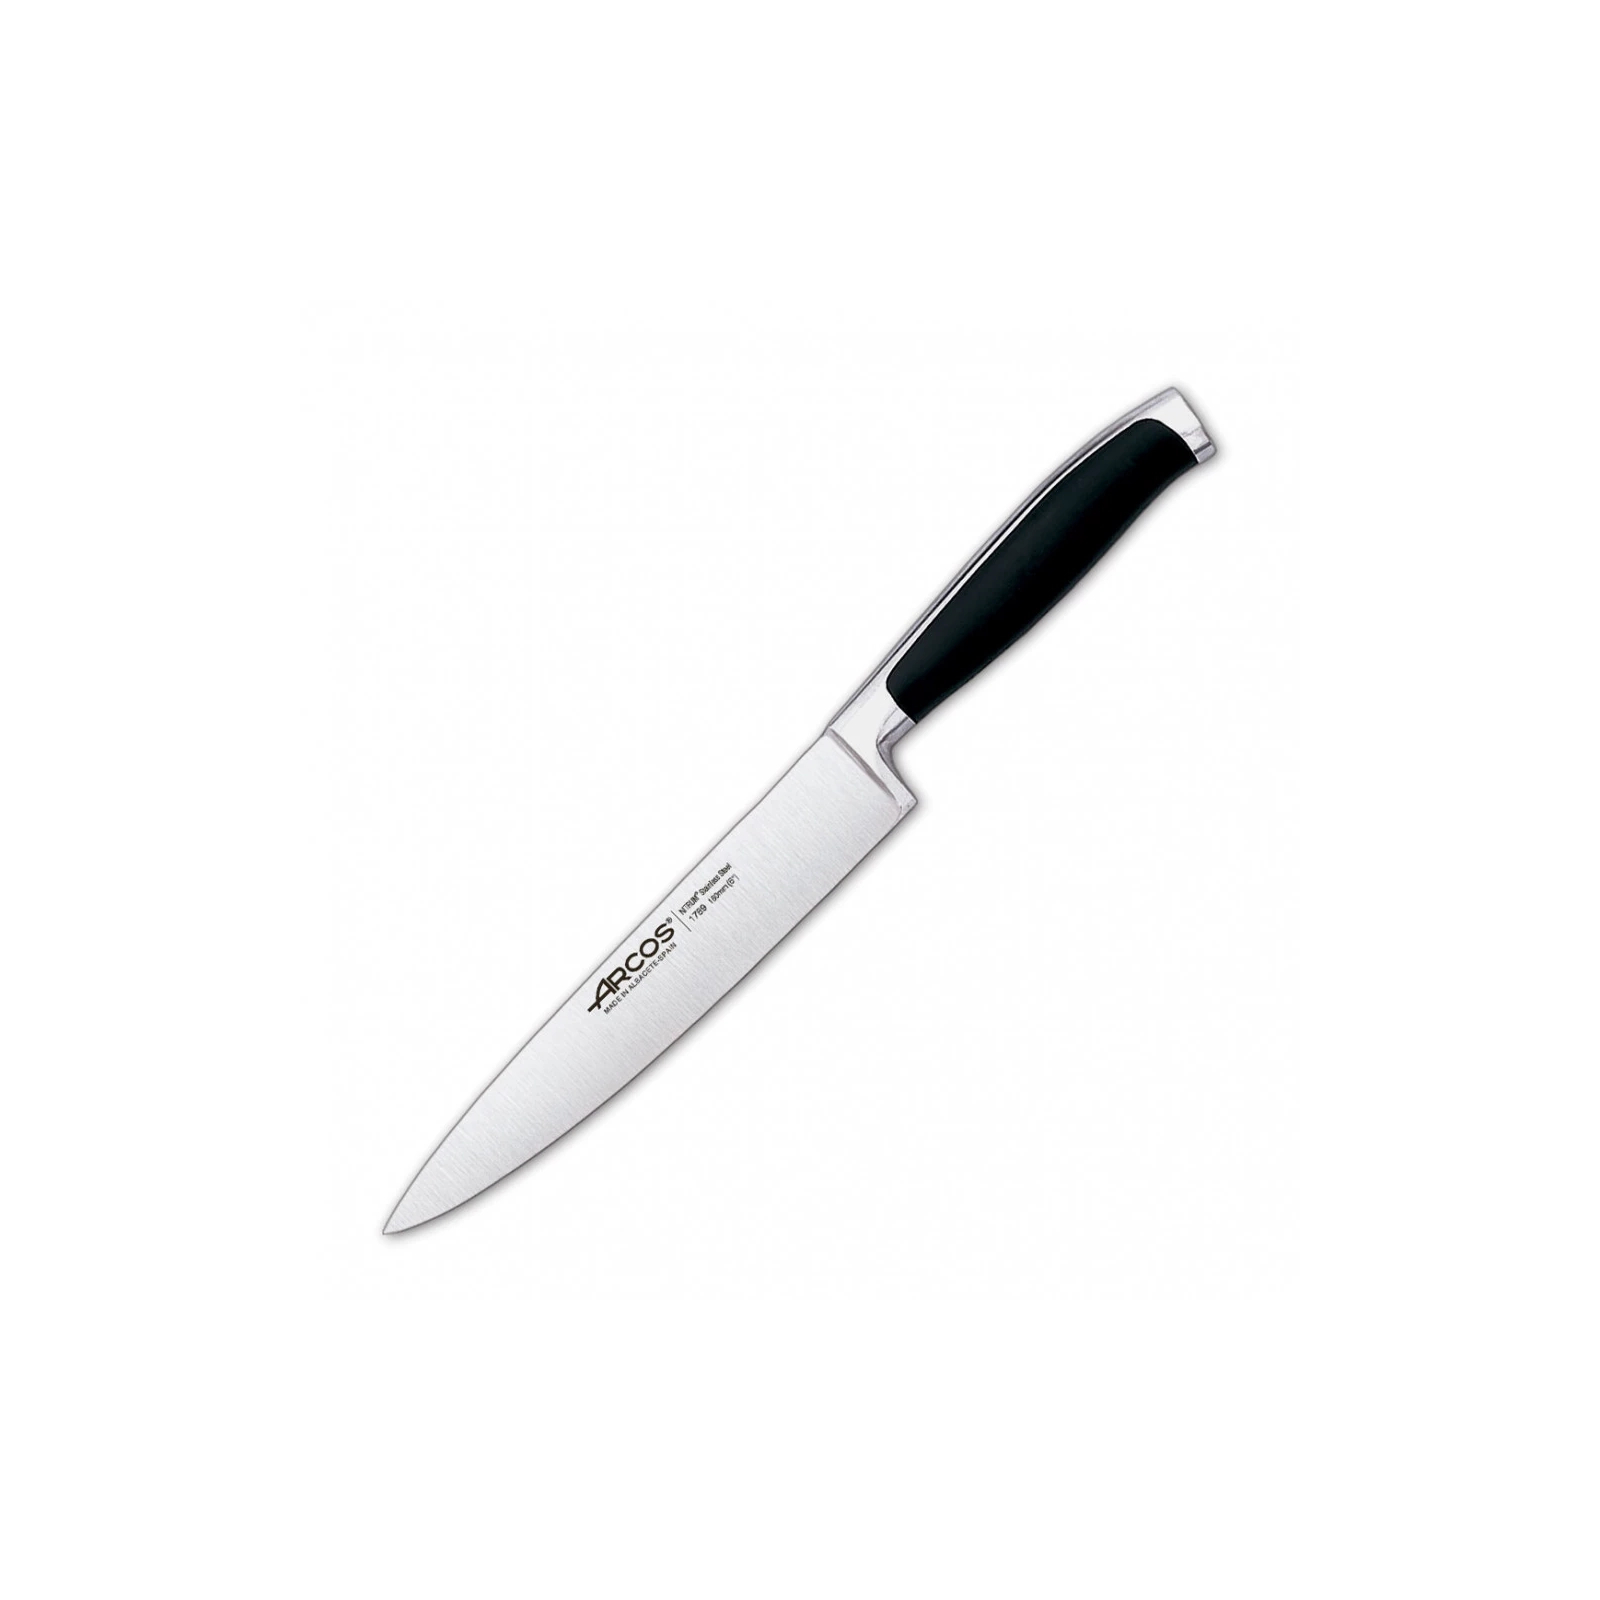 Кухонный нож Arcos Kyoto 160 мм (178900)